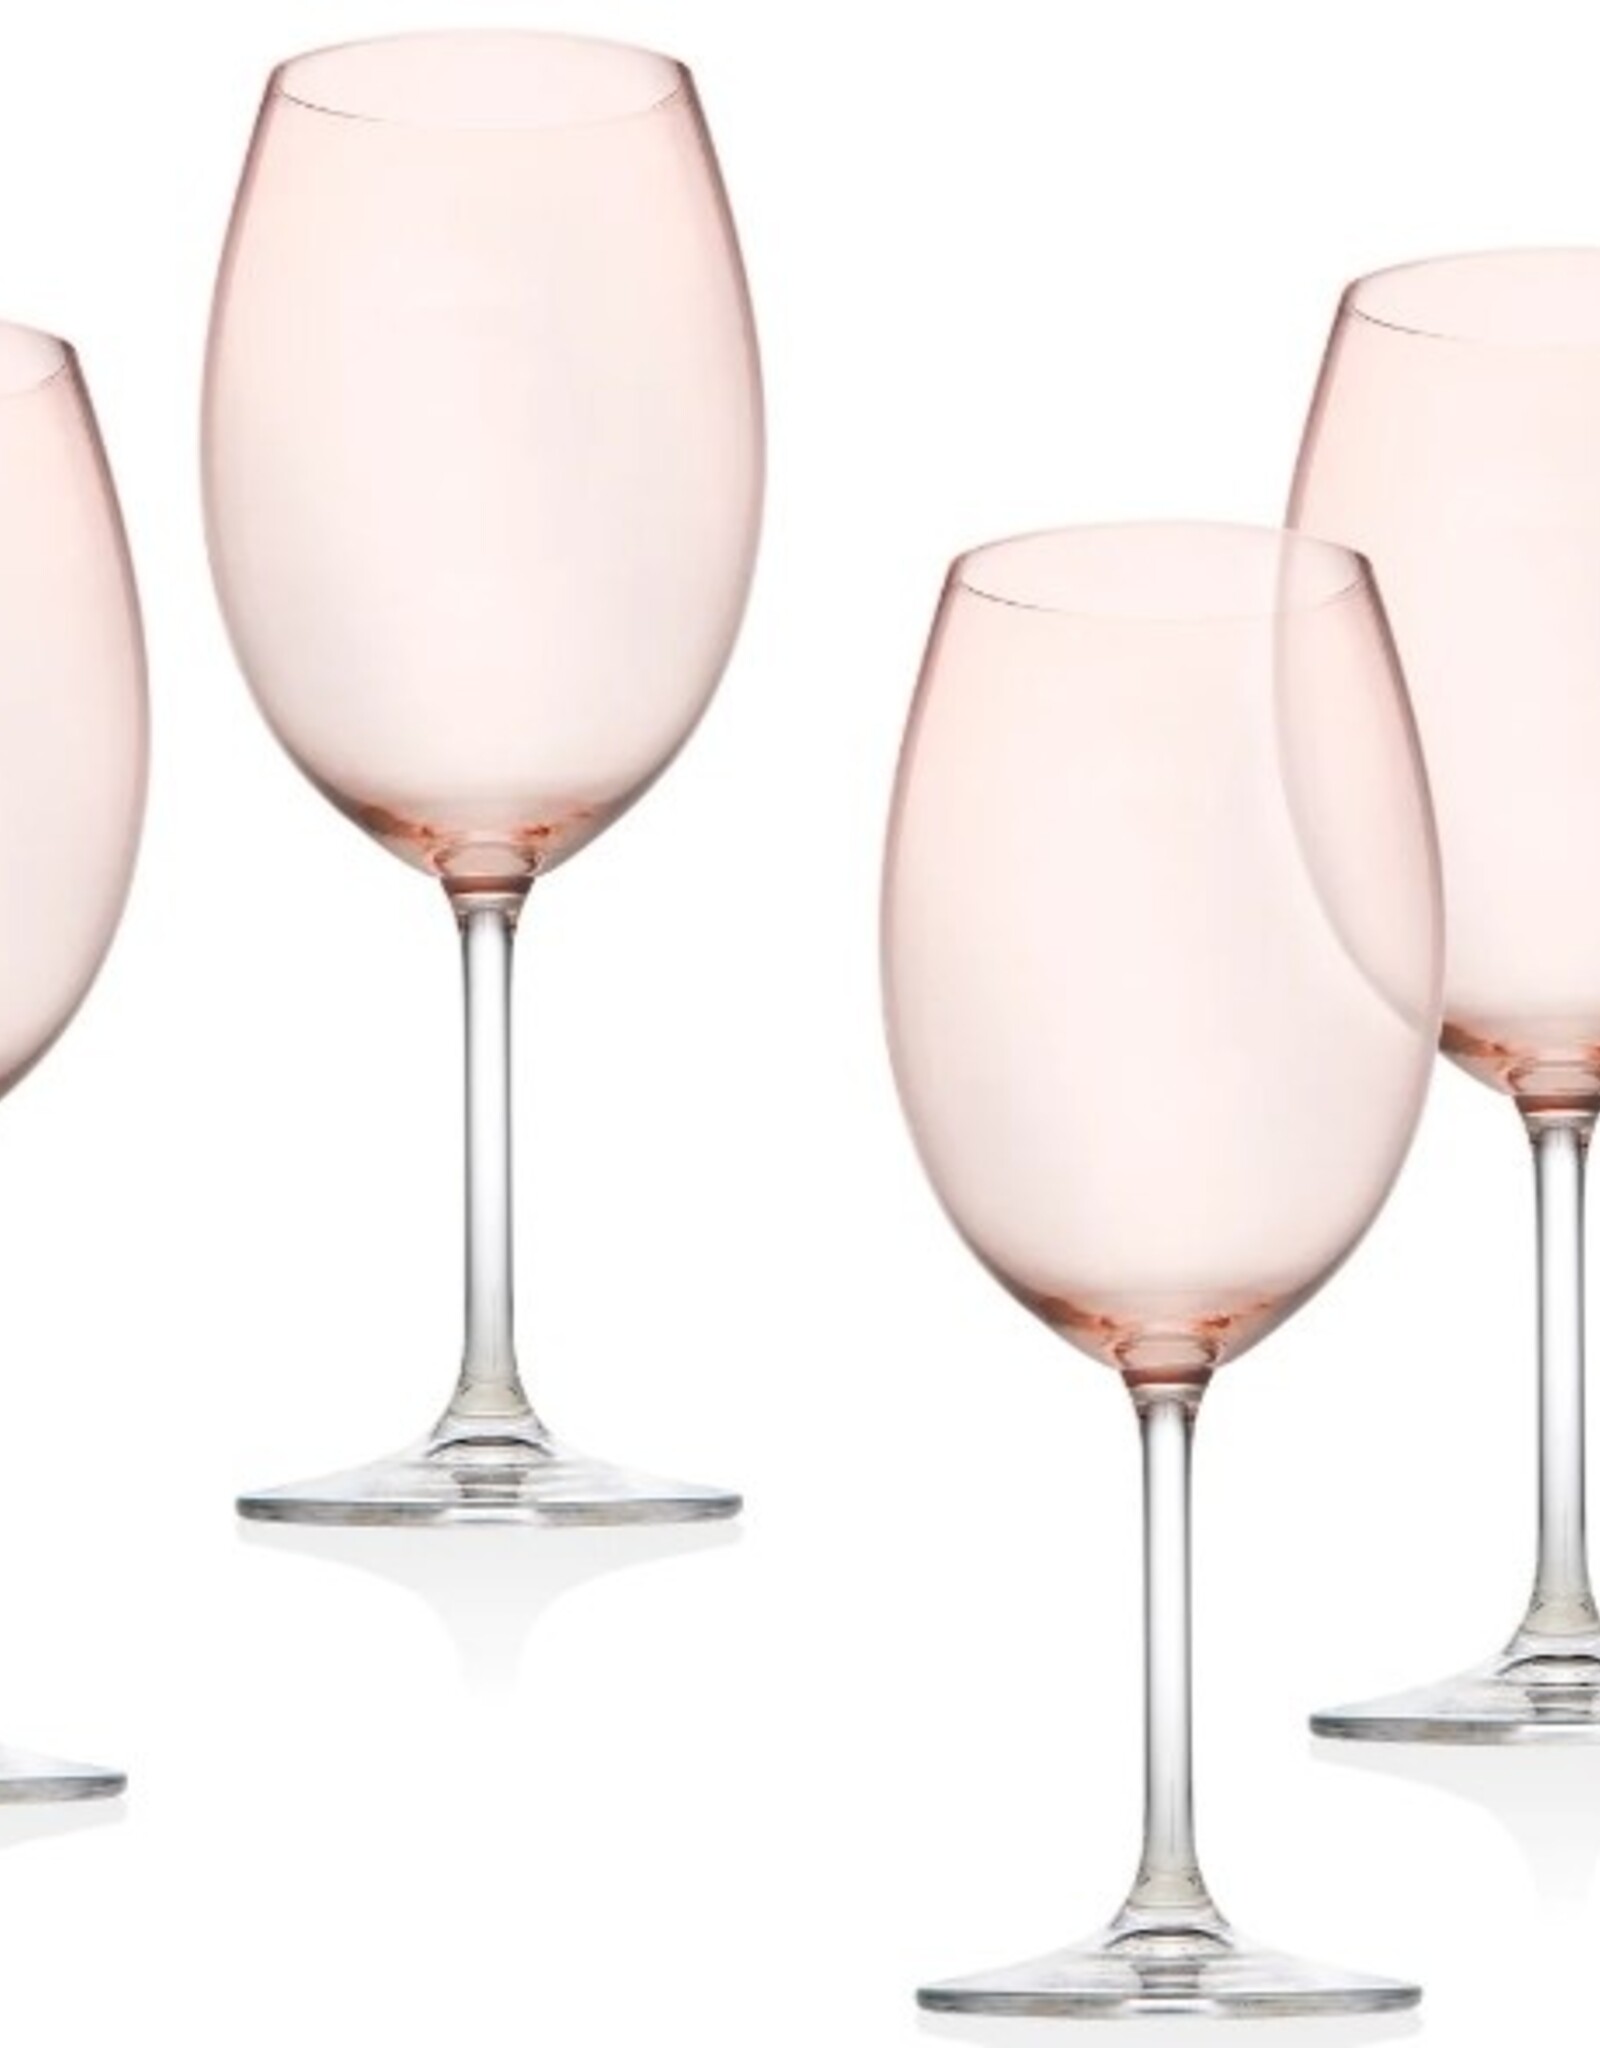 Godinger Wine Glasses - set of 4 Blush White